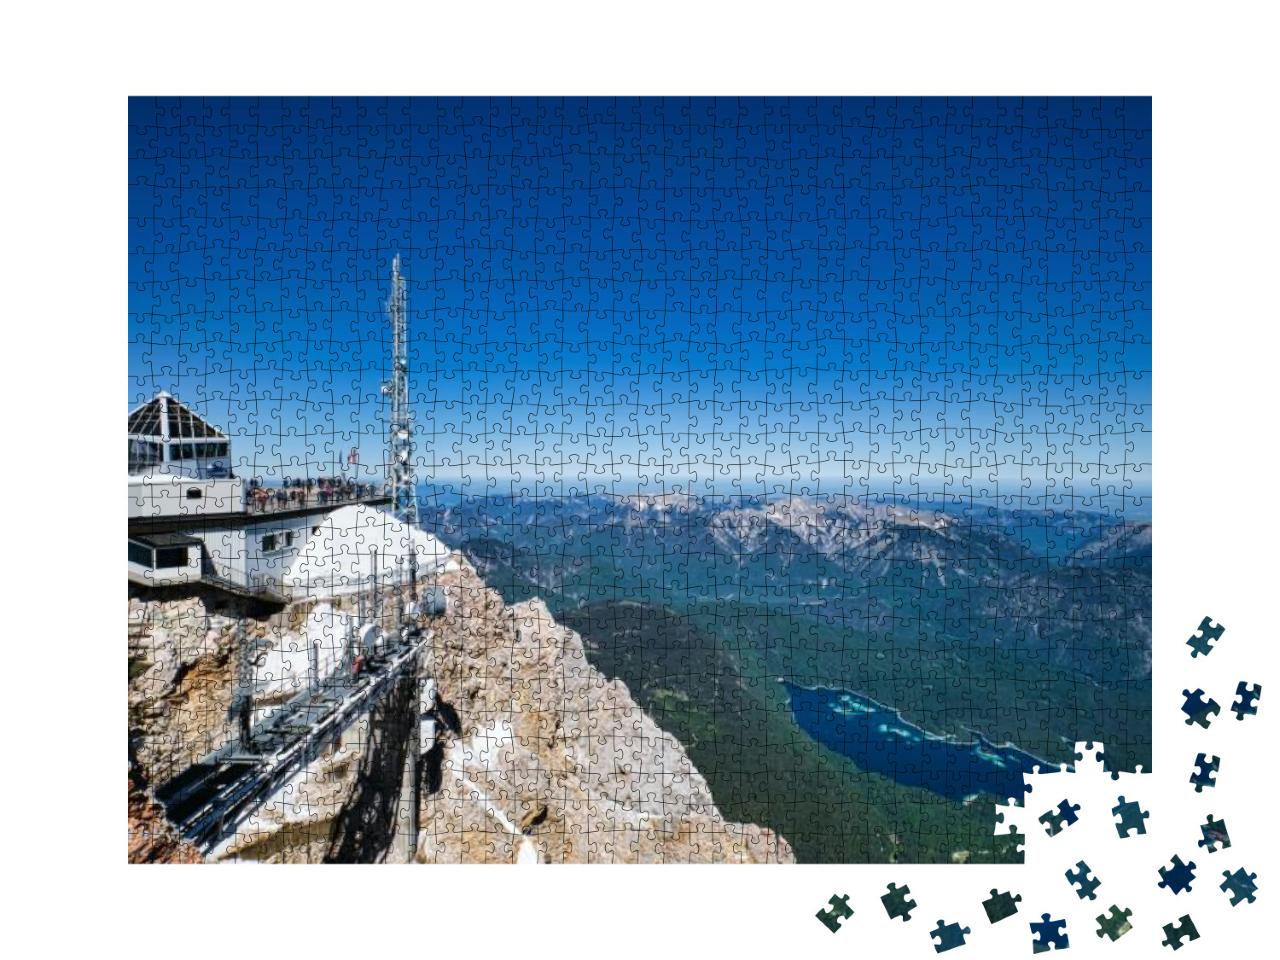 Puzzle 1000 Teile „Bergpanorama mit Eibsee, Garmisch-Partenkirchen“